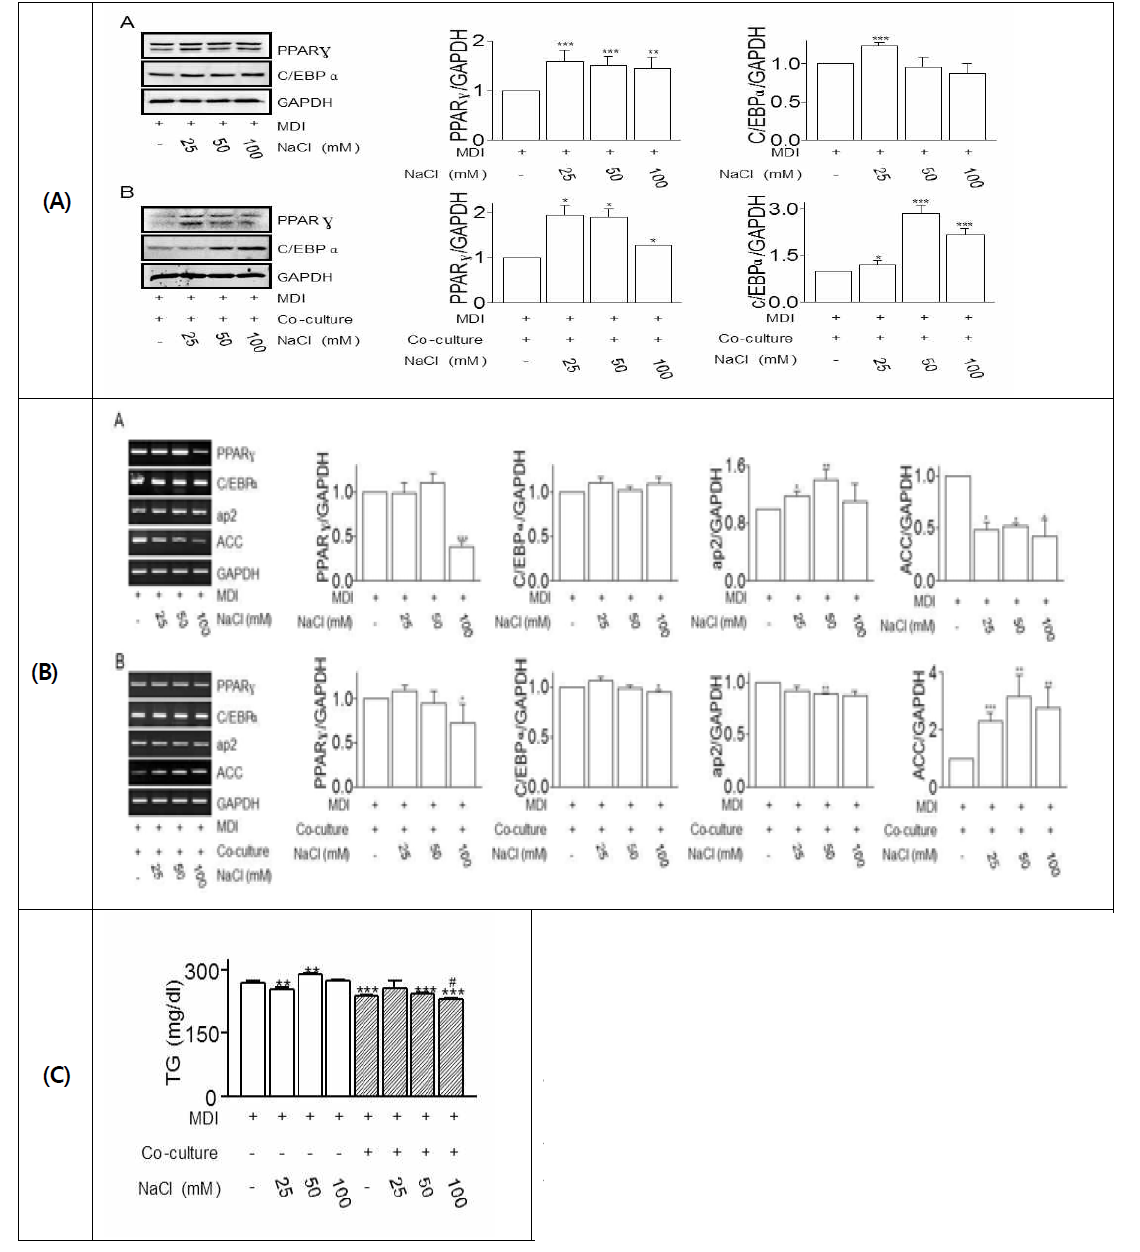 나트륨 처치에 따른 adipogenesis 관련 시그널 기전 및 지방분화 발현 측정. 3T3-L1지방세포 단독(A)과 co-culture(B)에서의 지방분화 관련 마커 PPARγ CEBP/α, ap2, ACC 및 TG를 측정함.(A: 단백질 발현, B::mRNA 발현, C TG 측정) (*, p<0.05, **, p<0.01, ***, p<0.001)